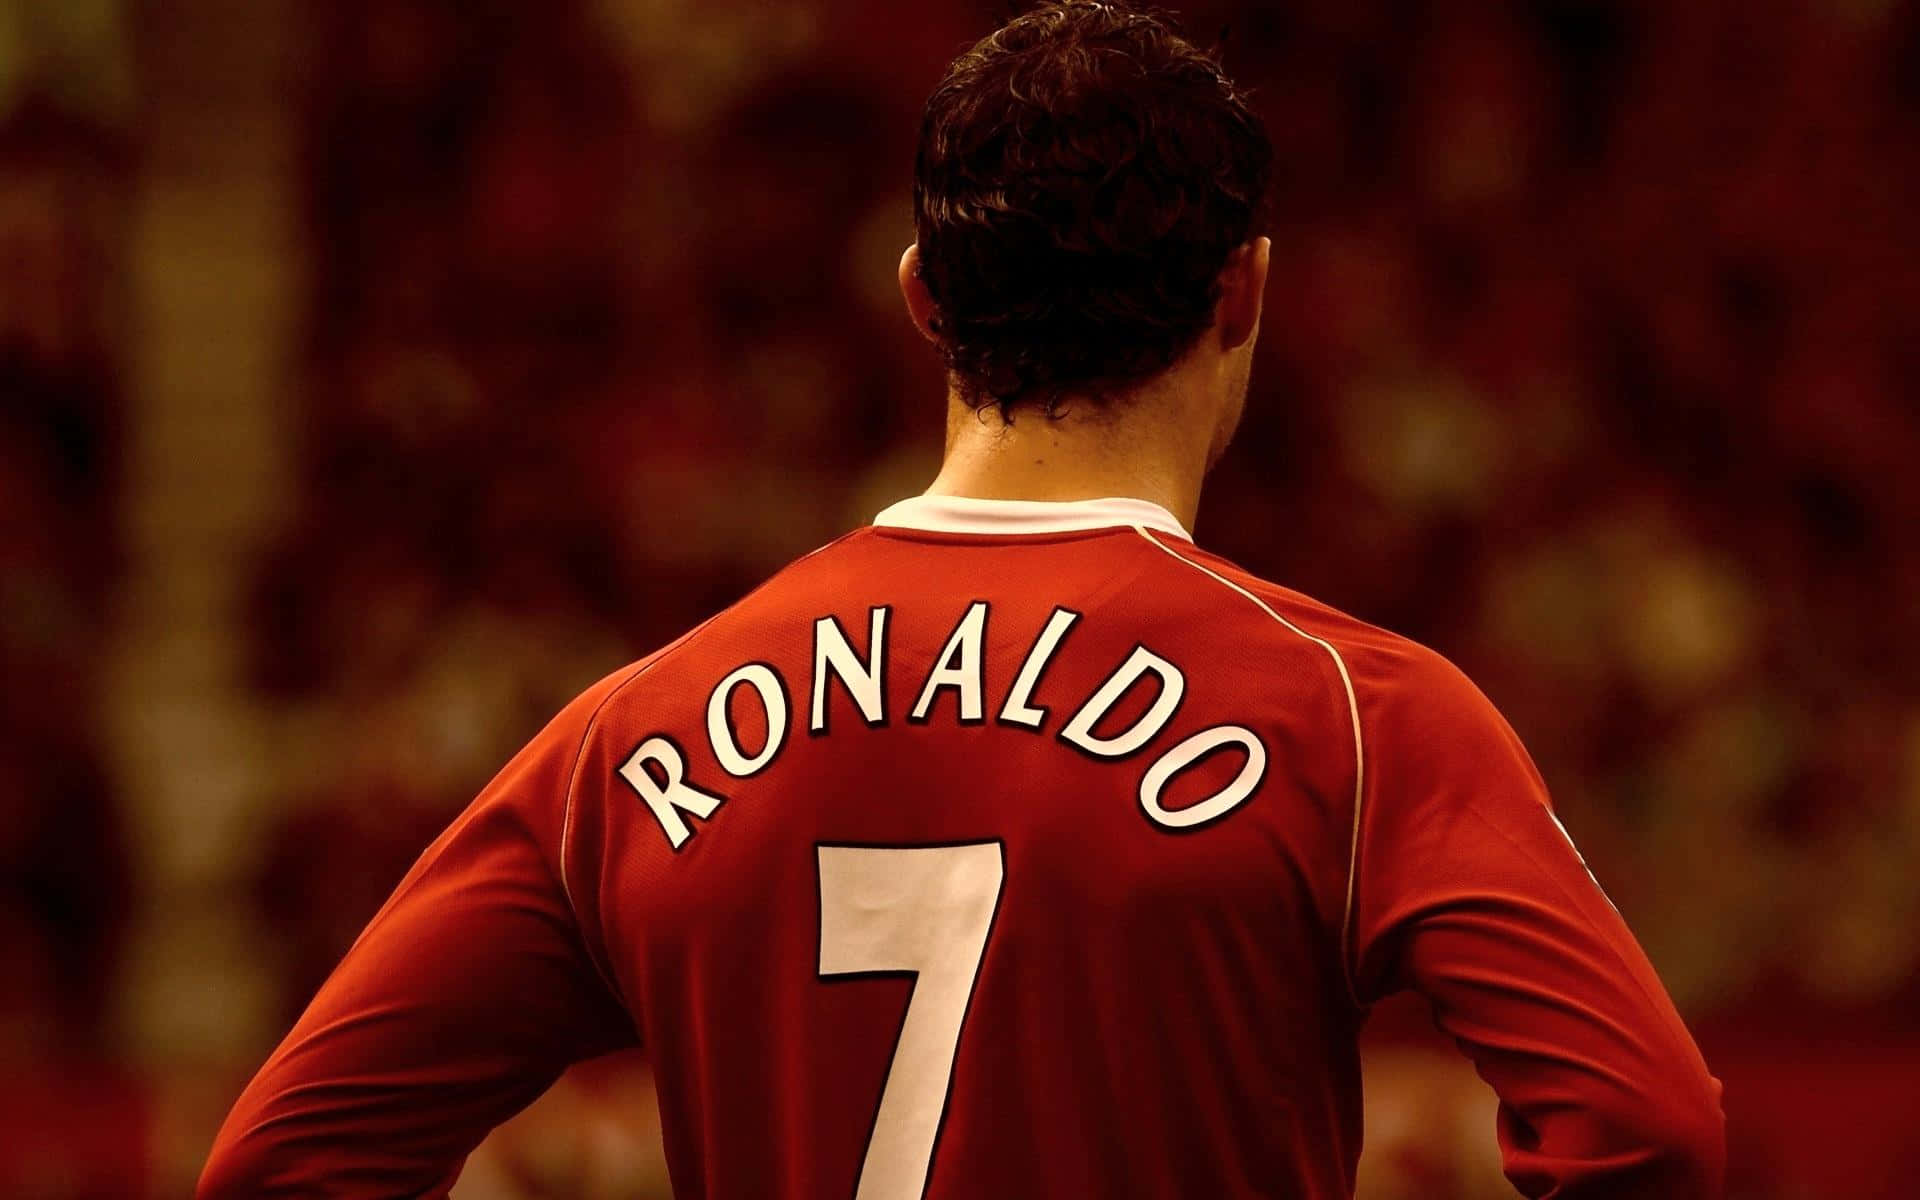 Professionelfodboldspiller Cristiano Ronaldo.